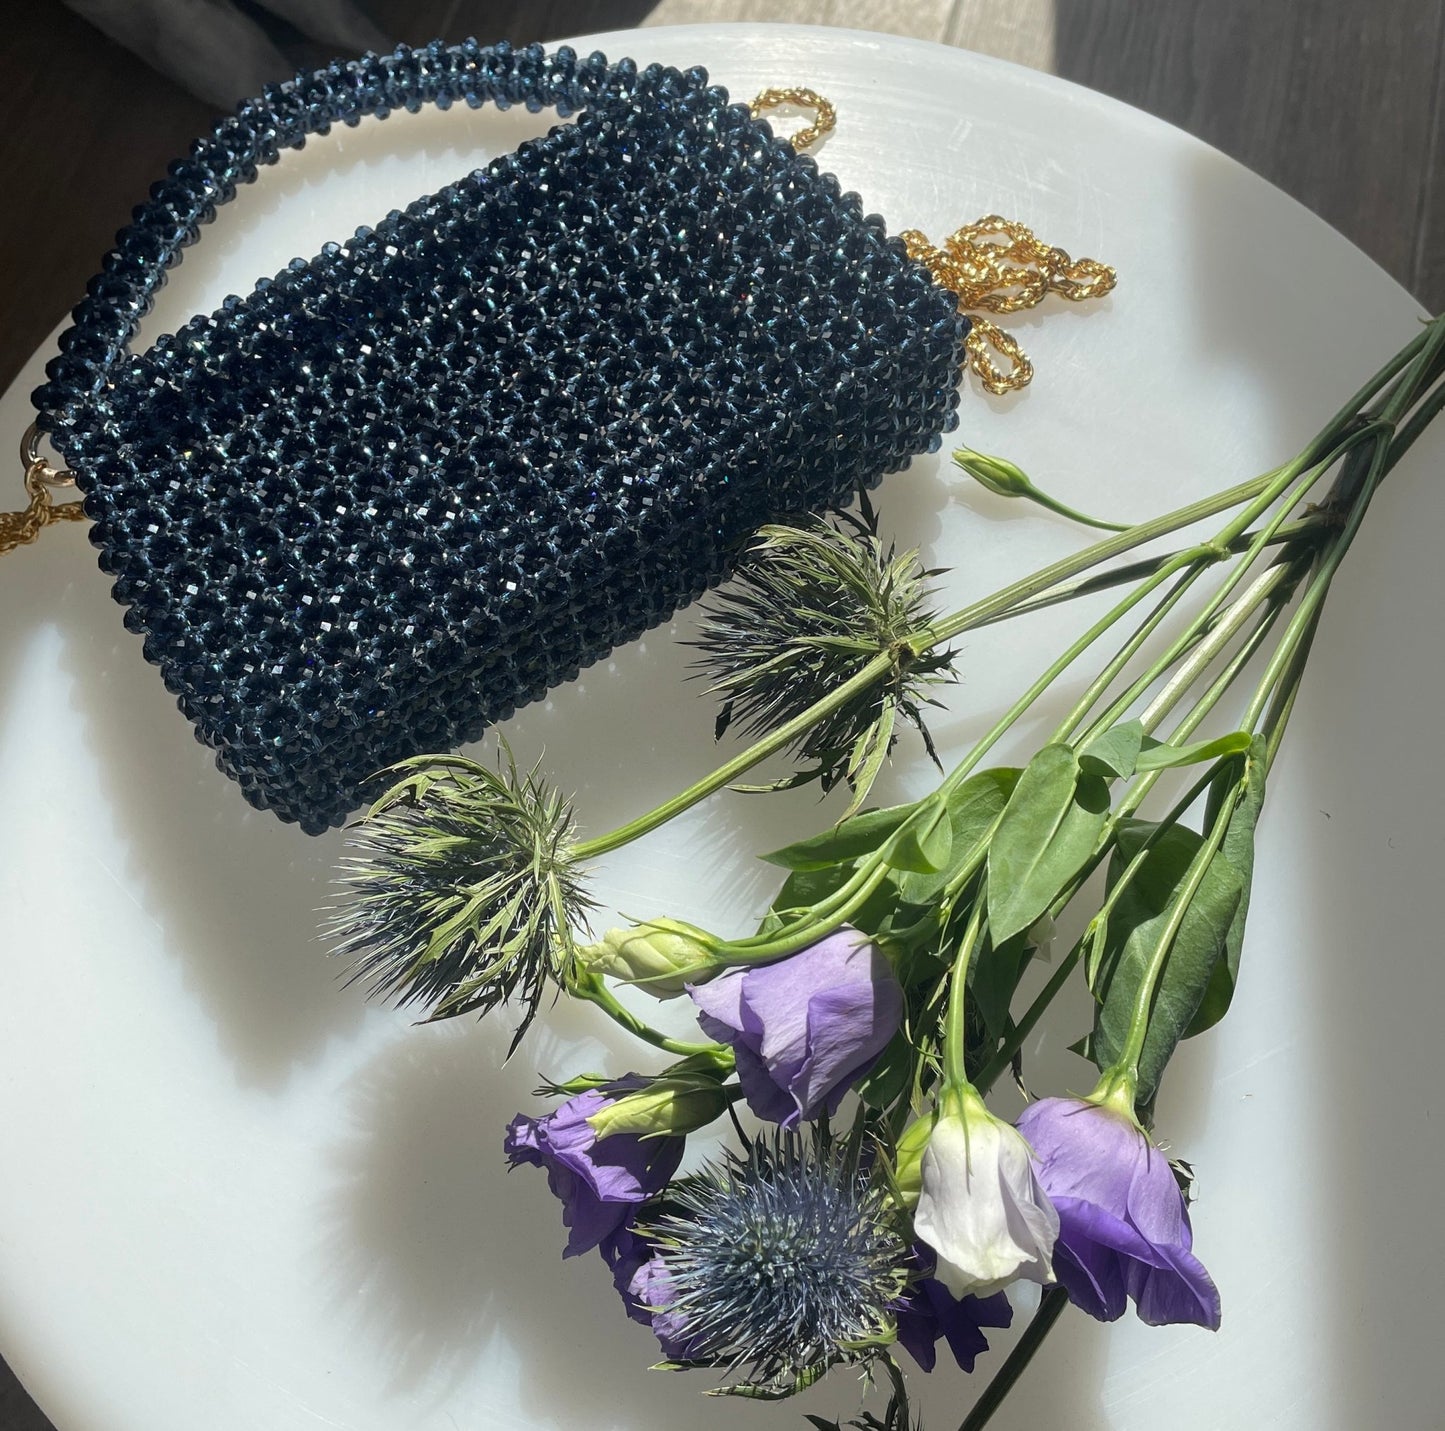 Handtasche aus Glasperlen nachtblau - GRAYSS FASHION & HOME